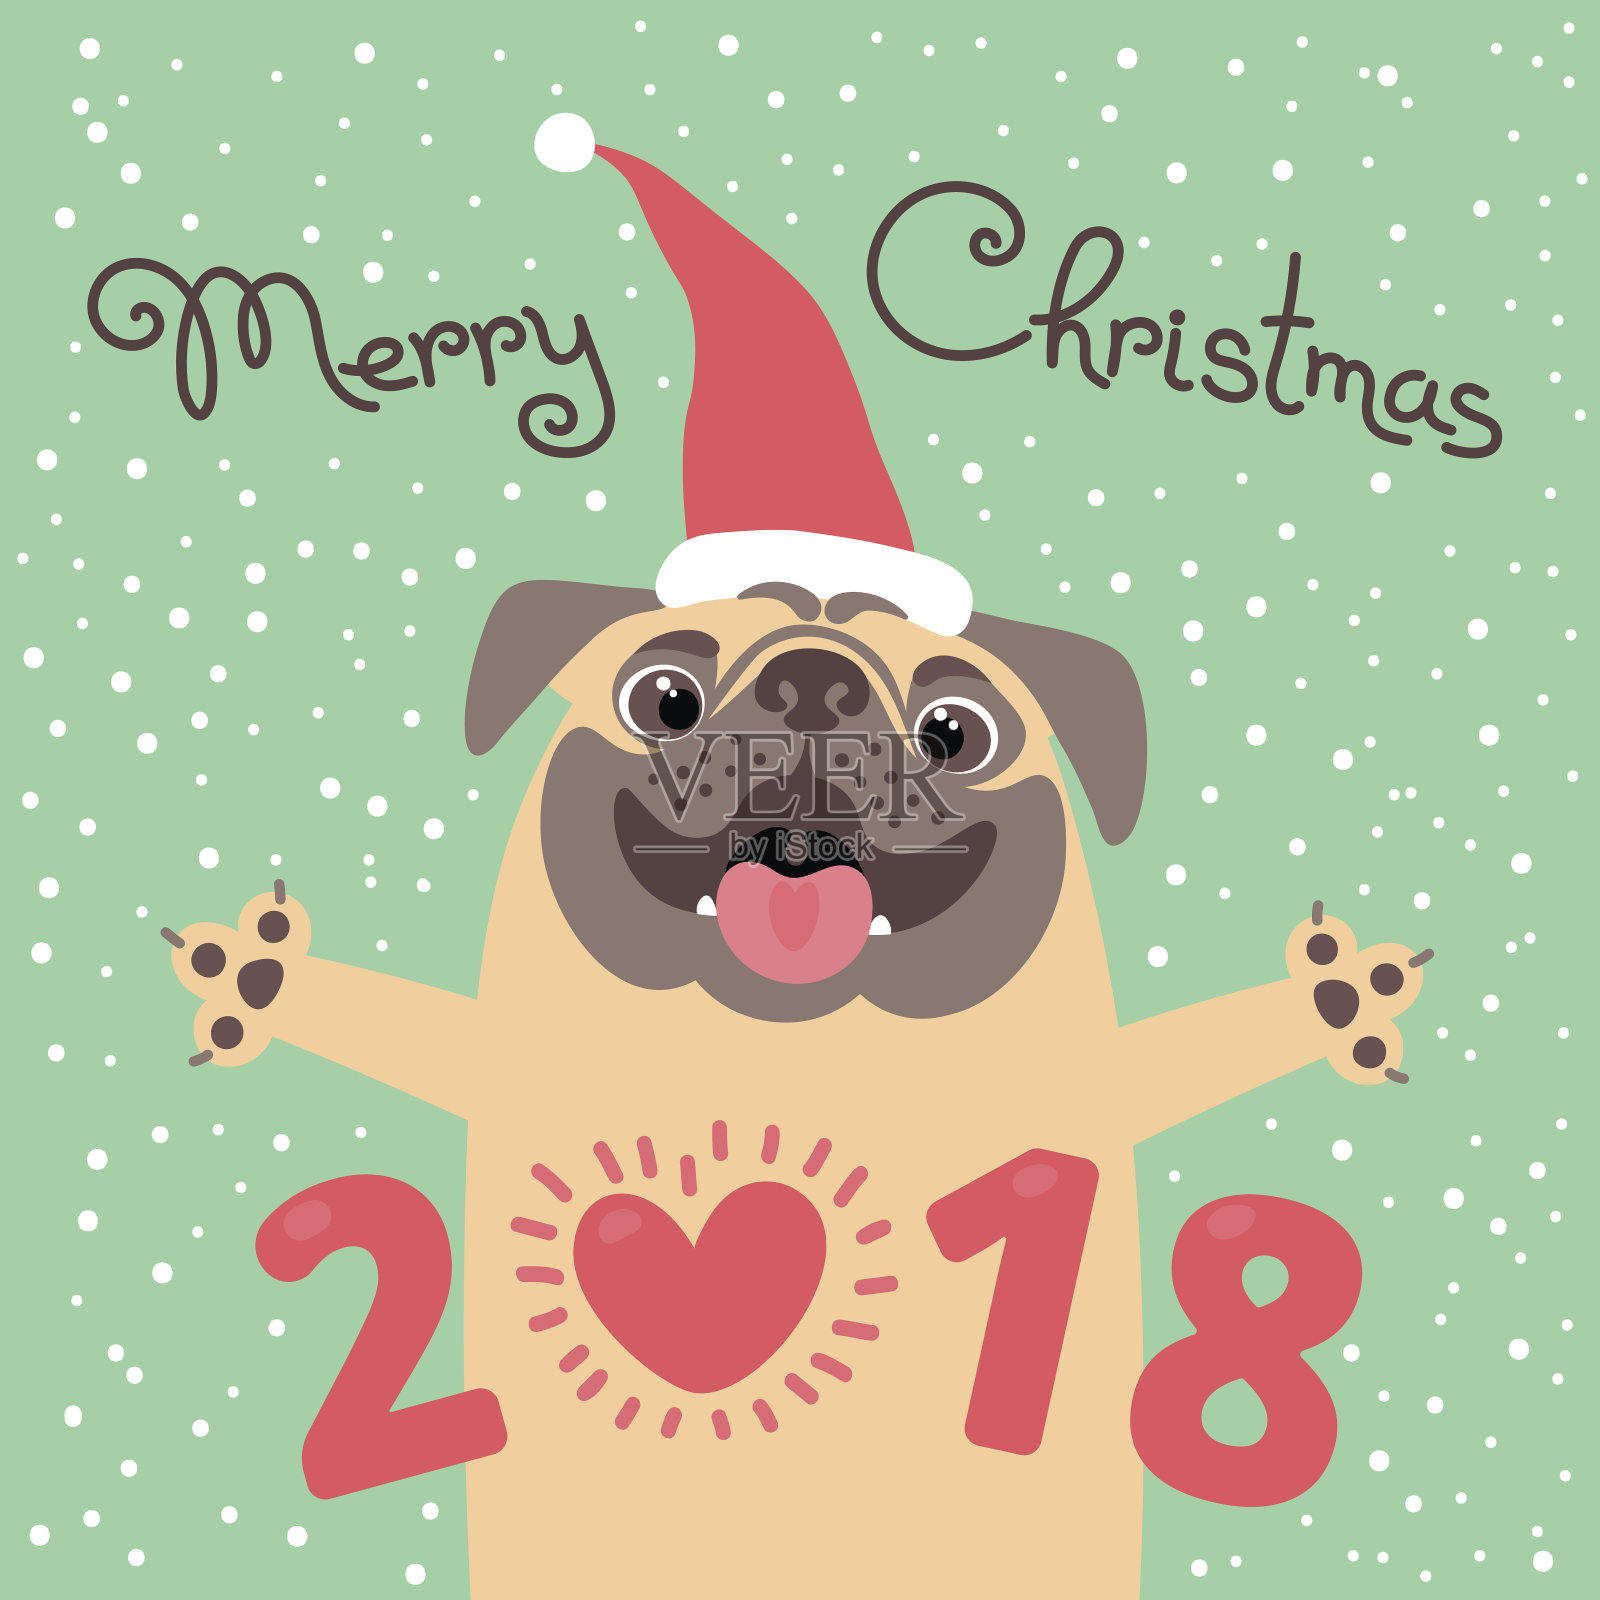 2018年有狗的圣诞贺卡。滑稽的哈巴狗恭贺节日。卡通风格的彩色明信片设计模板素材